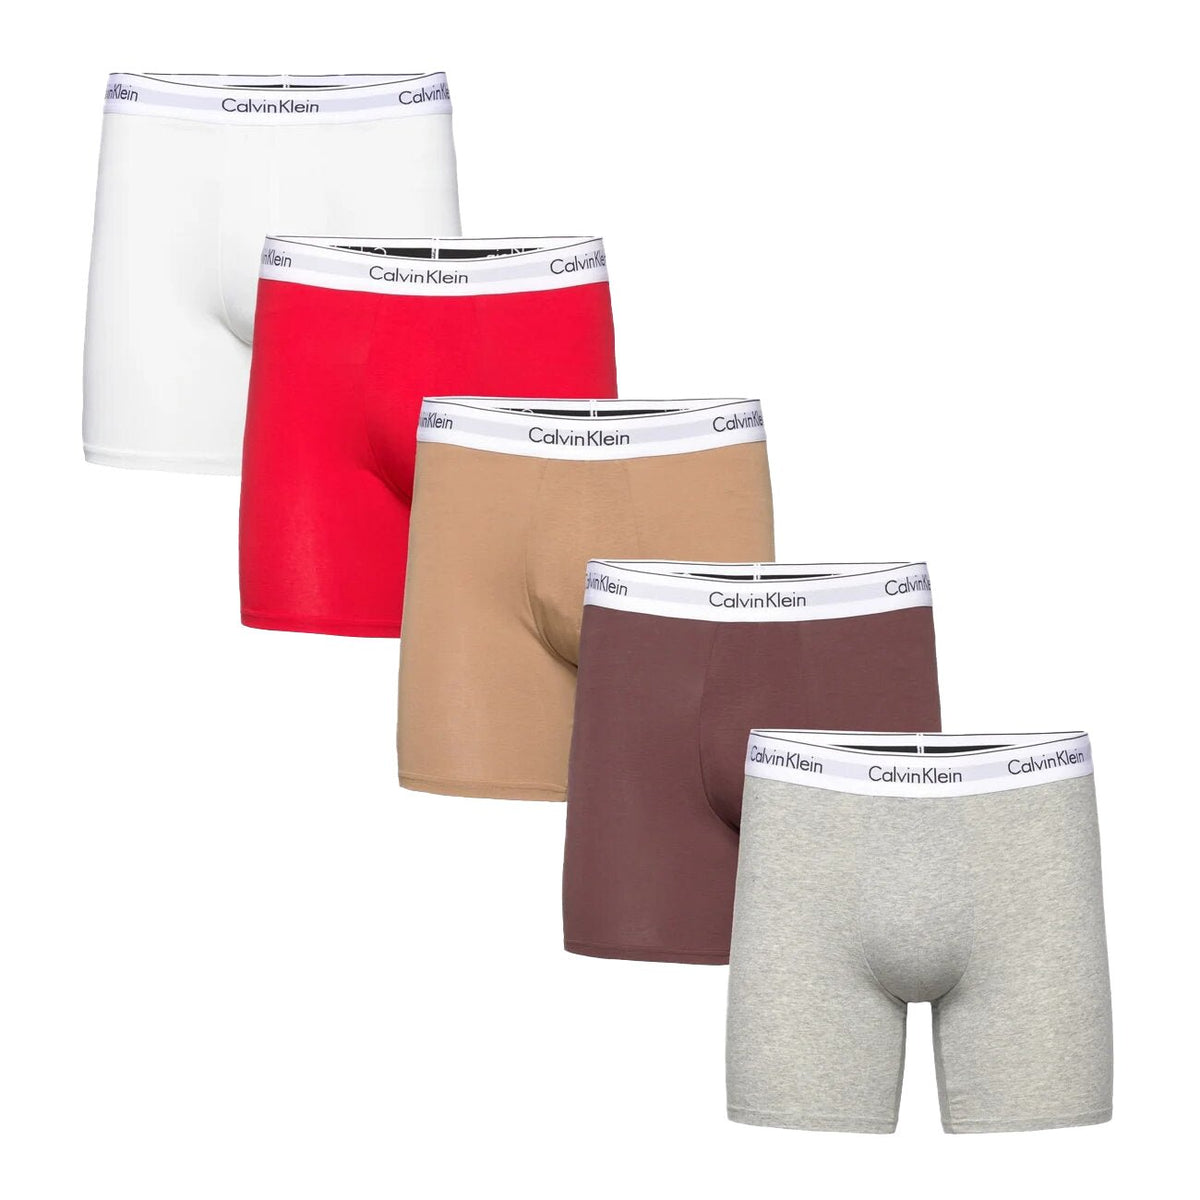 Calvin Klein Modern Cotton Stretch Boxers White,Red,Beige,Brown